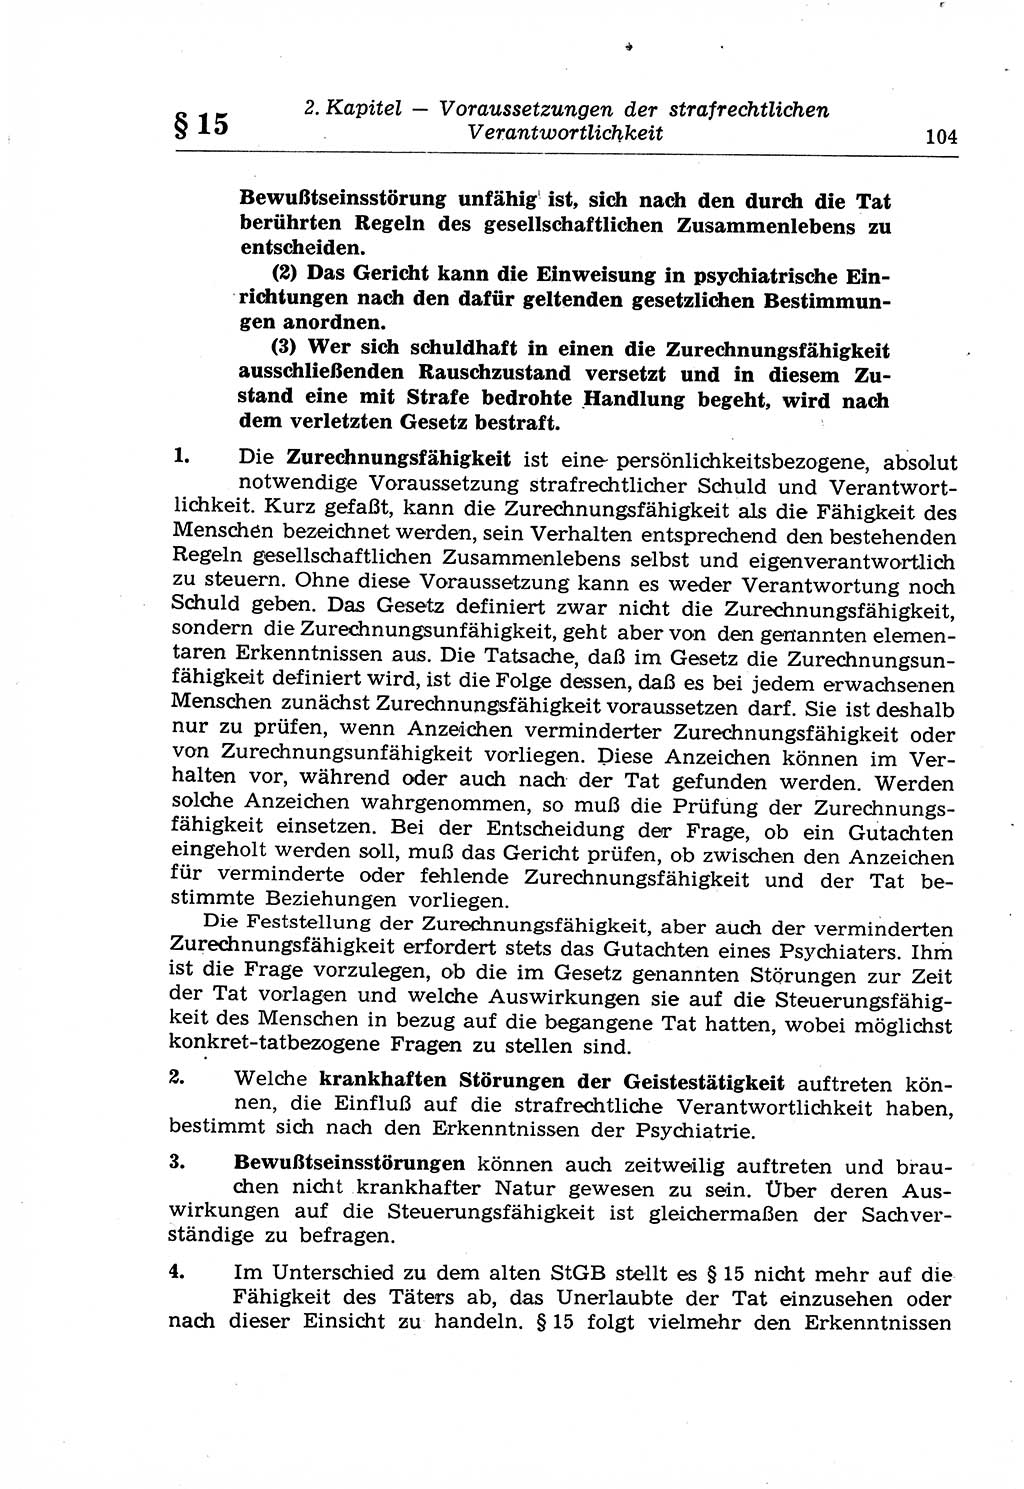 Strafrecht der Deutschen Demokratischen Republik (DDR), Lehrkommentar zum Strafgesetzbuch (StGB), Allgemeiner Teil 1969, Seite 104 (Strafr. DDR Lehrkomm. StGB AT 1969, S. 104)